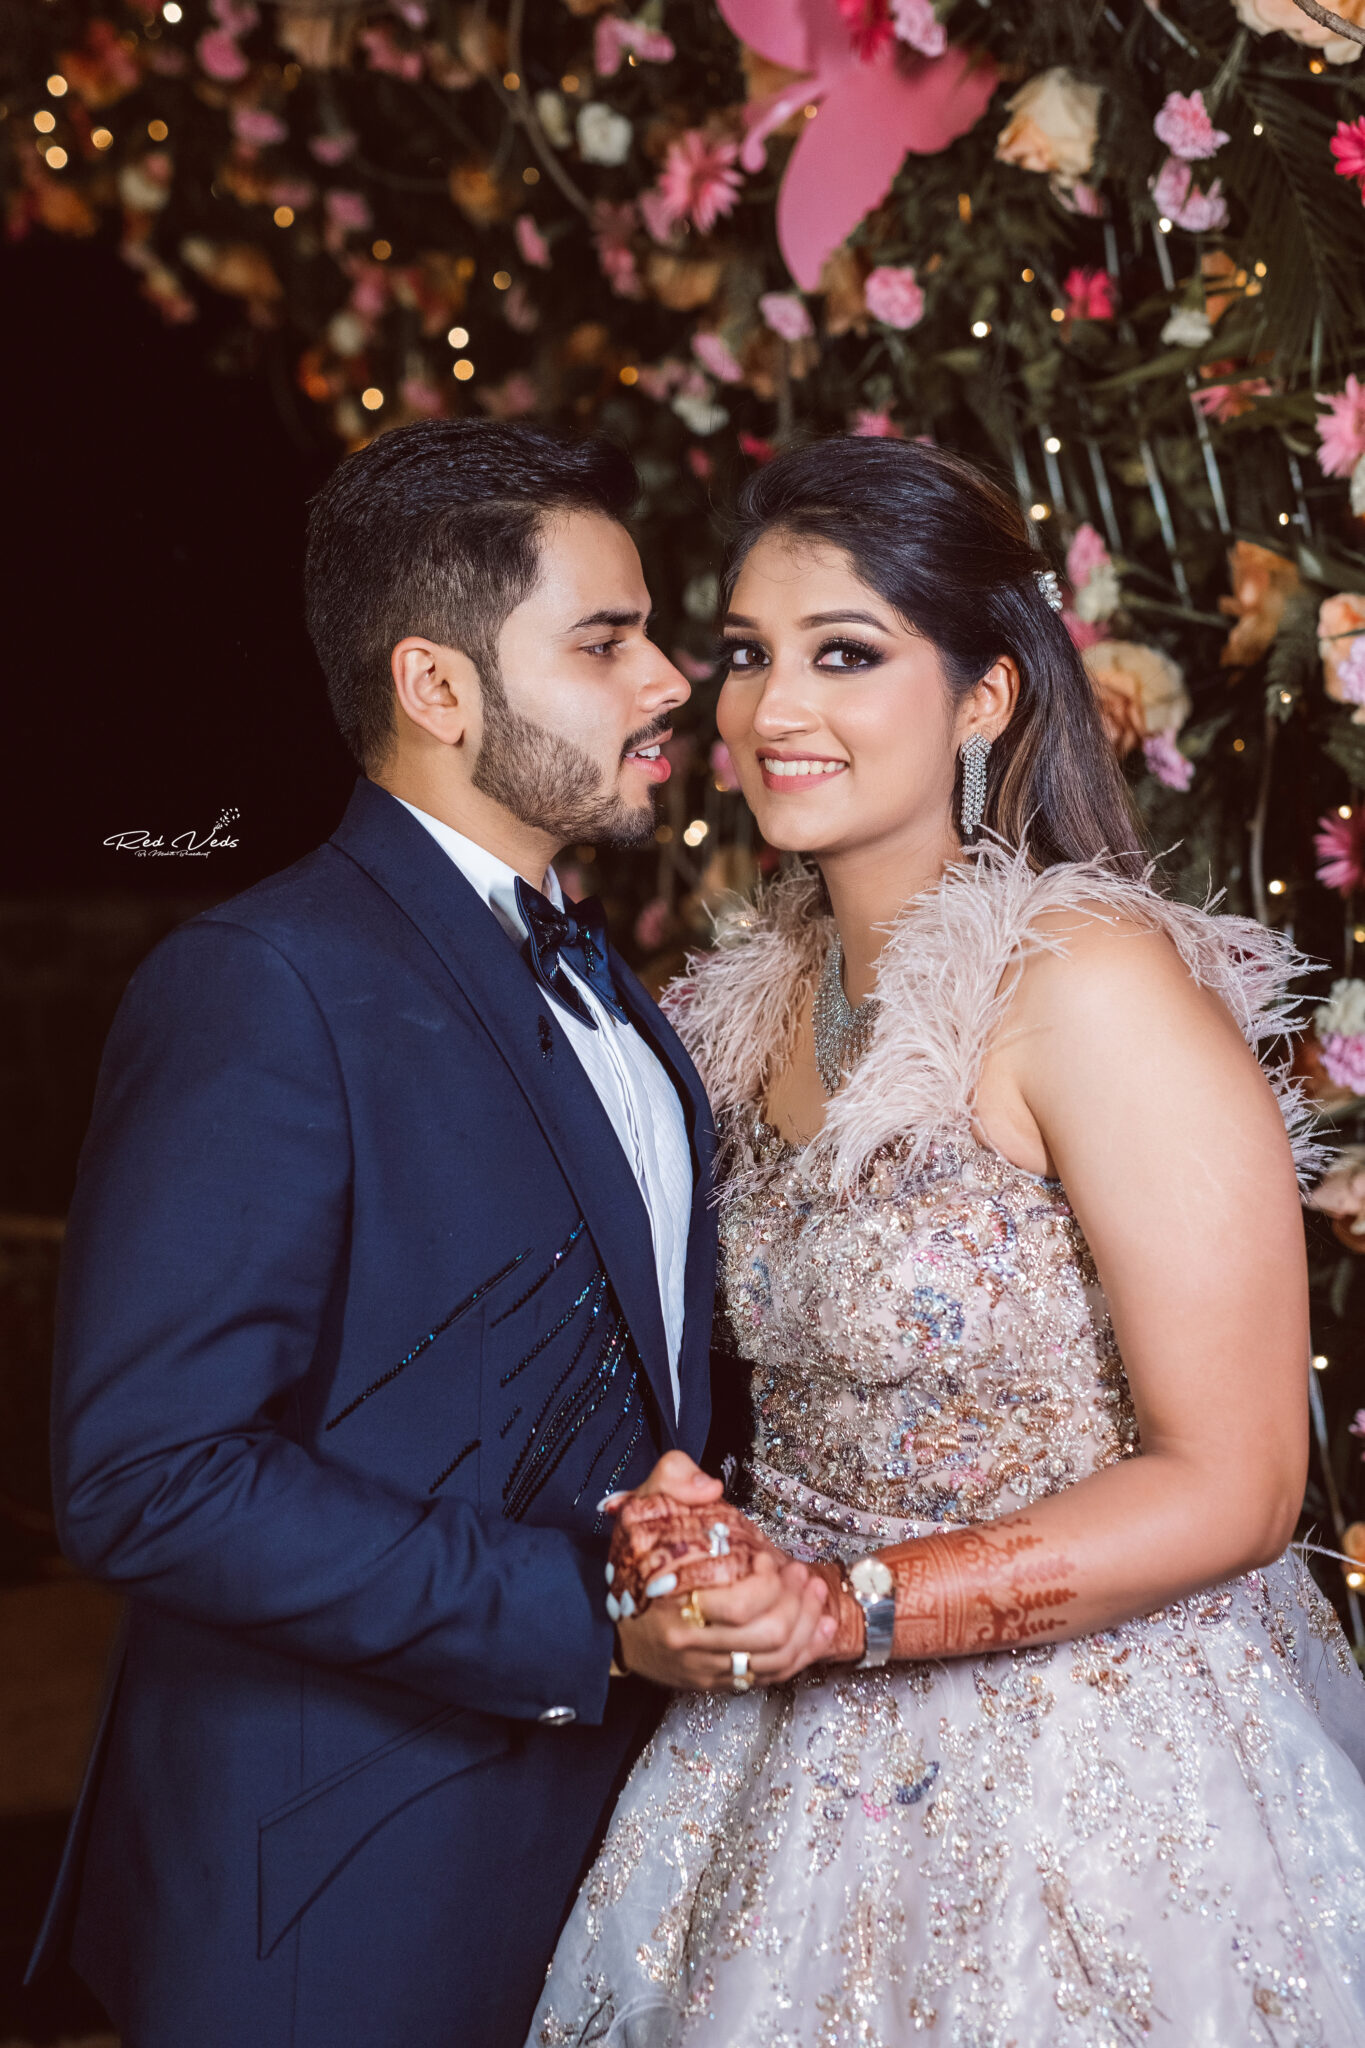 Marathi Engagement | Engagement photography poses, Wedding couple poses  photography, Wedding couple poses